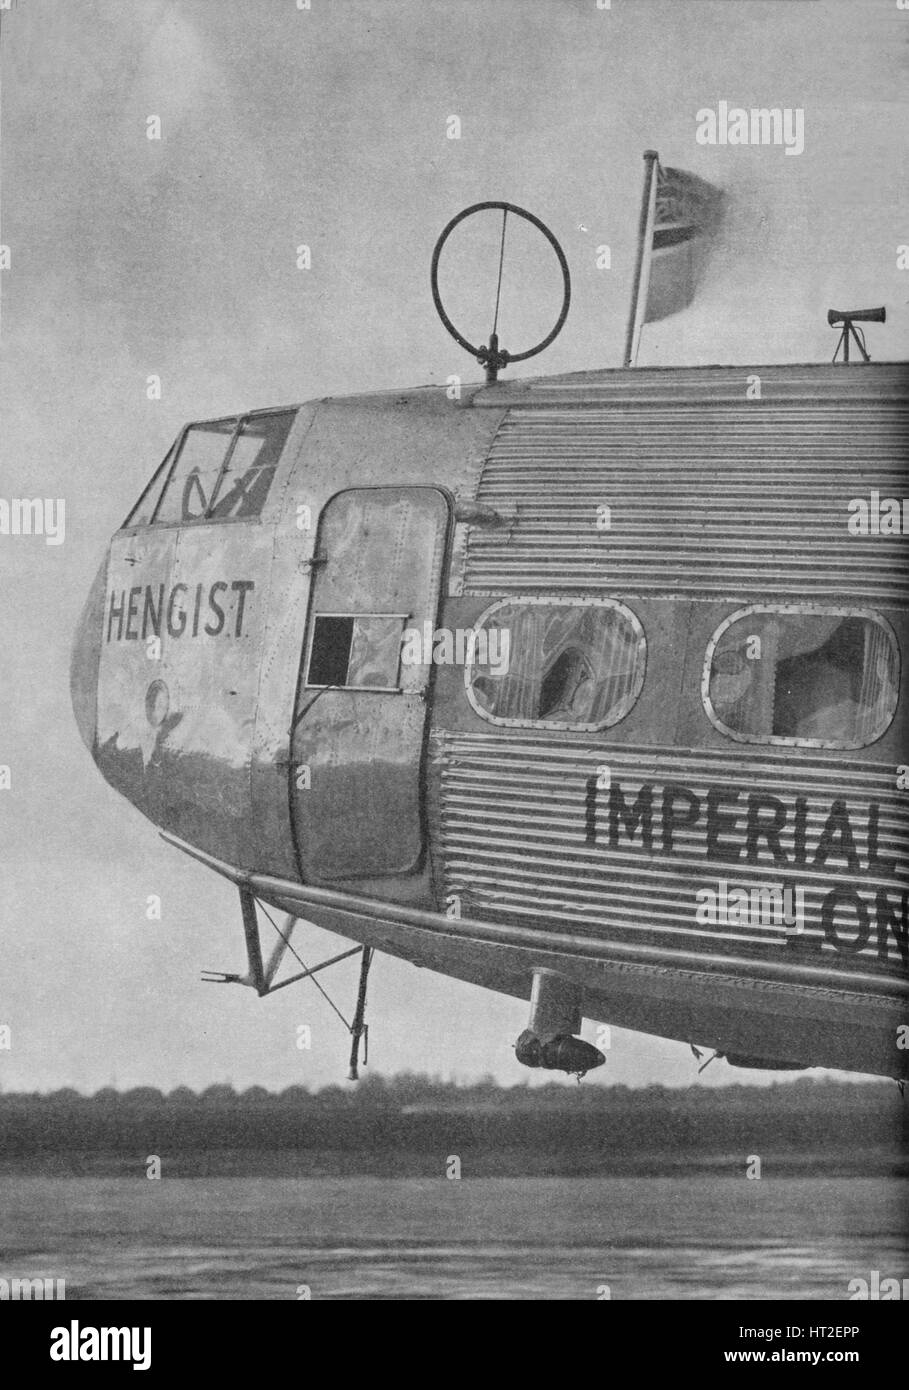 Aerial Ausrüstung auf der Imperial Airways Liner Hengist, c1936 (c1937). Künstler: Marconis Wireless Telegraph Co. Ltd. Stockfoto